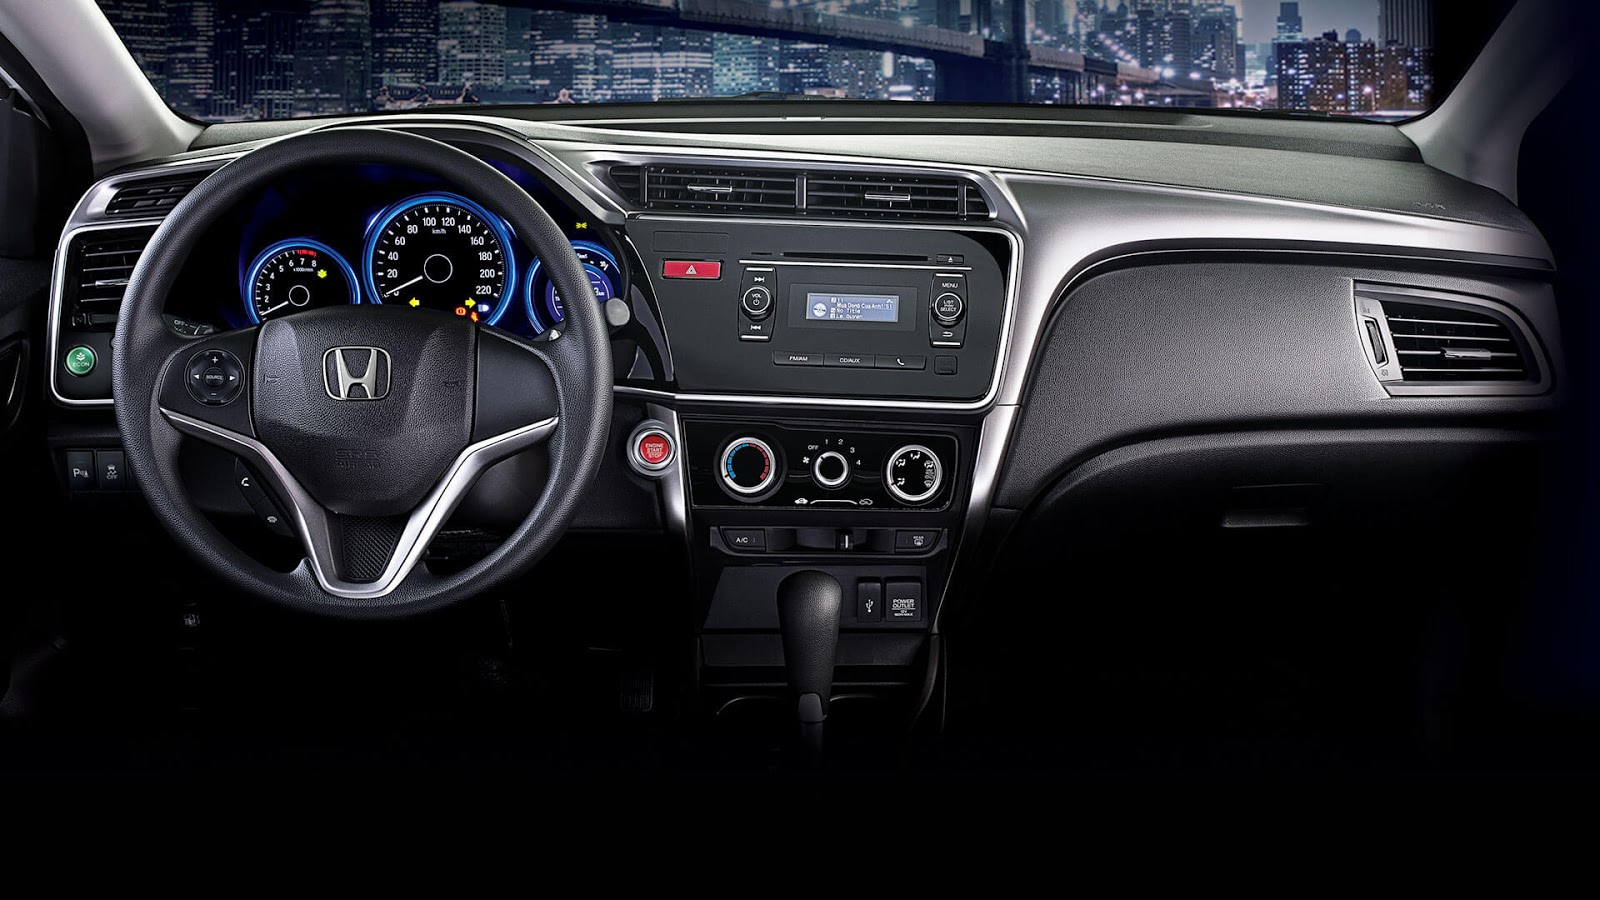 Honda City 2016 sở hữu công nghệ khởi động bằng nút bấm, chìa khóa thông minh, gương chiếu hậu chỉnh điện, gập điện và tích hợp đèn xi nhan.